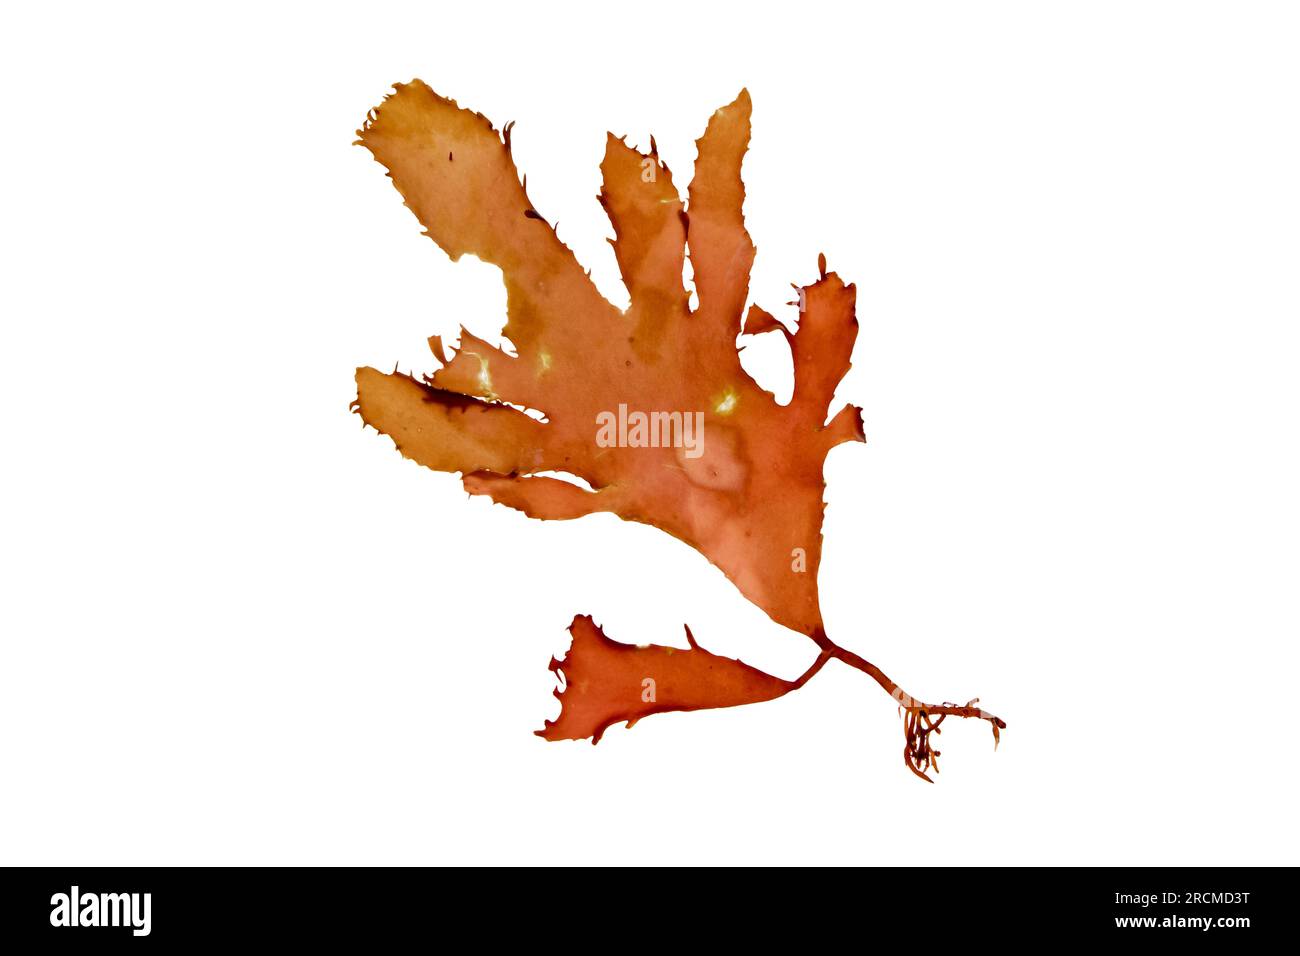 Polyneura laciniata oder Erythroglossum laciniatum-rote Alge, isoliert auf weiß. Flacher Zunge-Algenzweig. Stockfoto